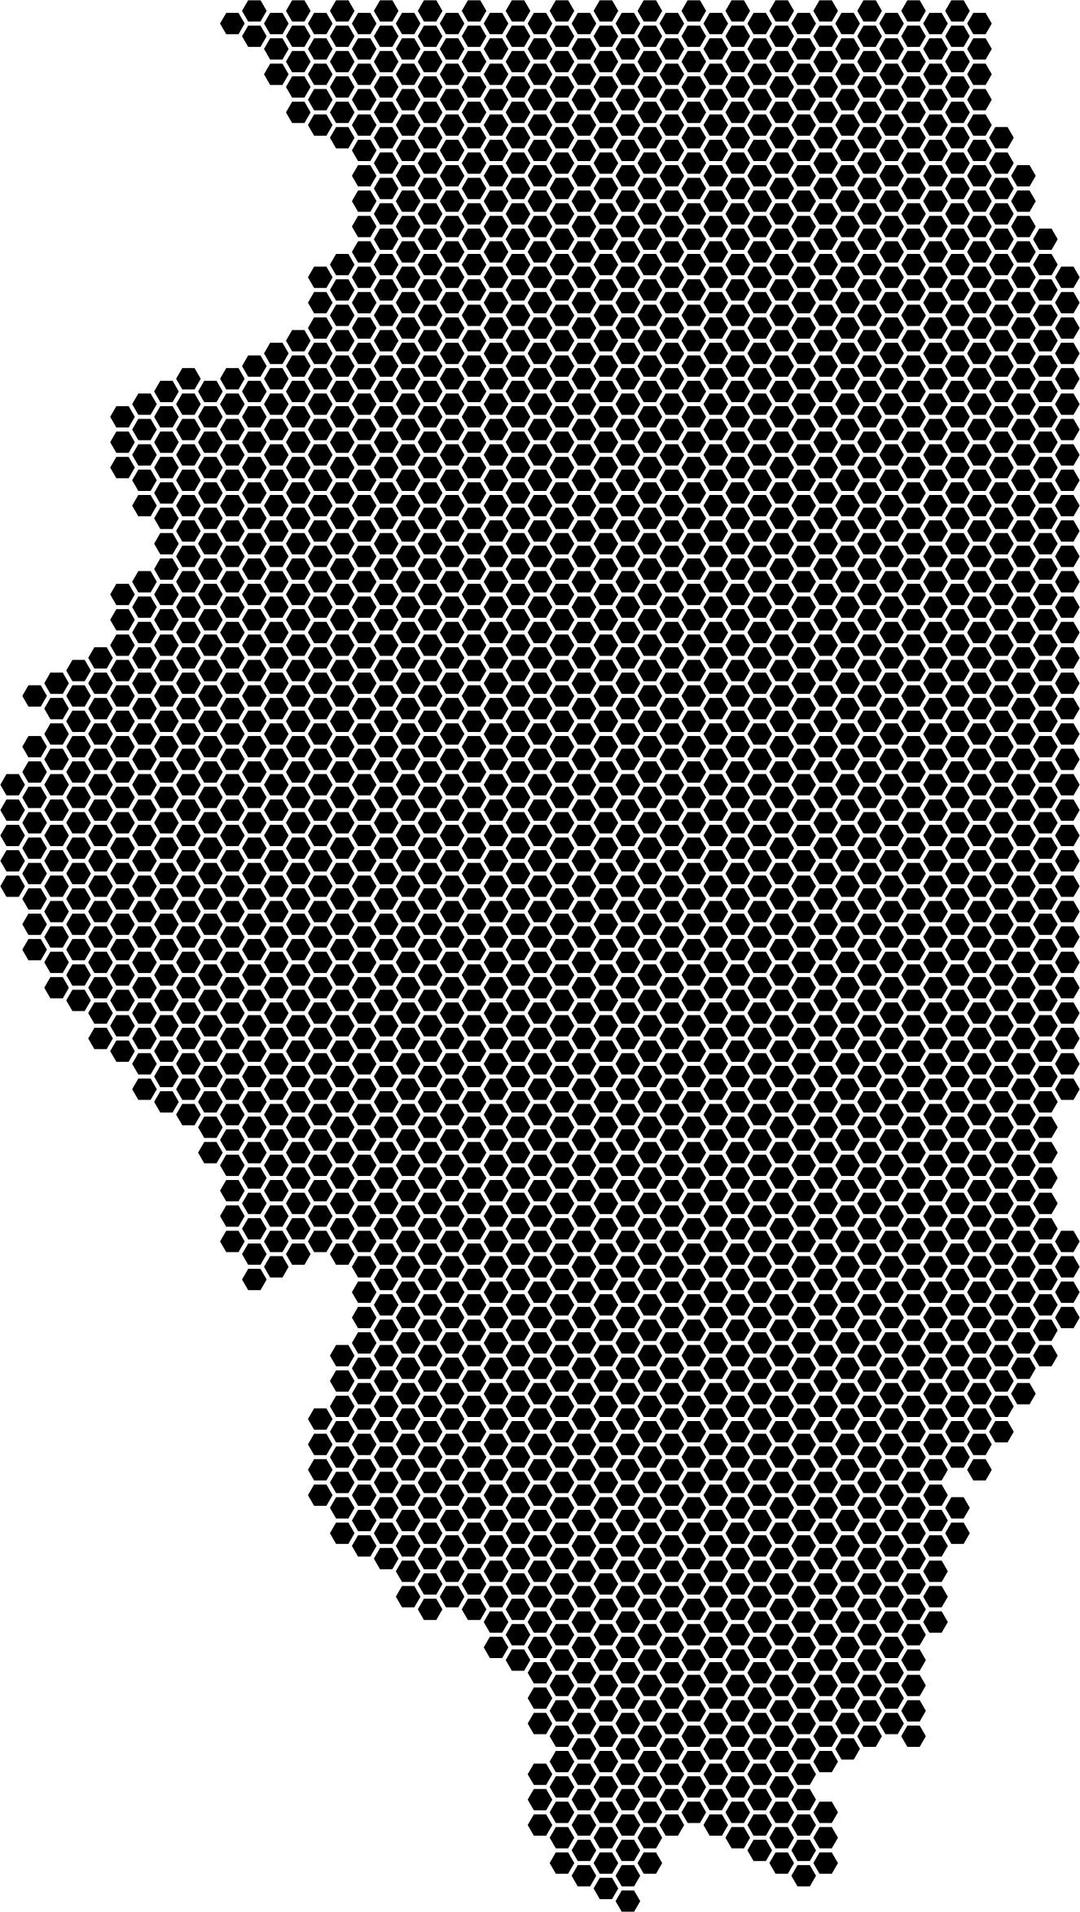 Illinois Hexagonal Mosaic png transparent